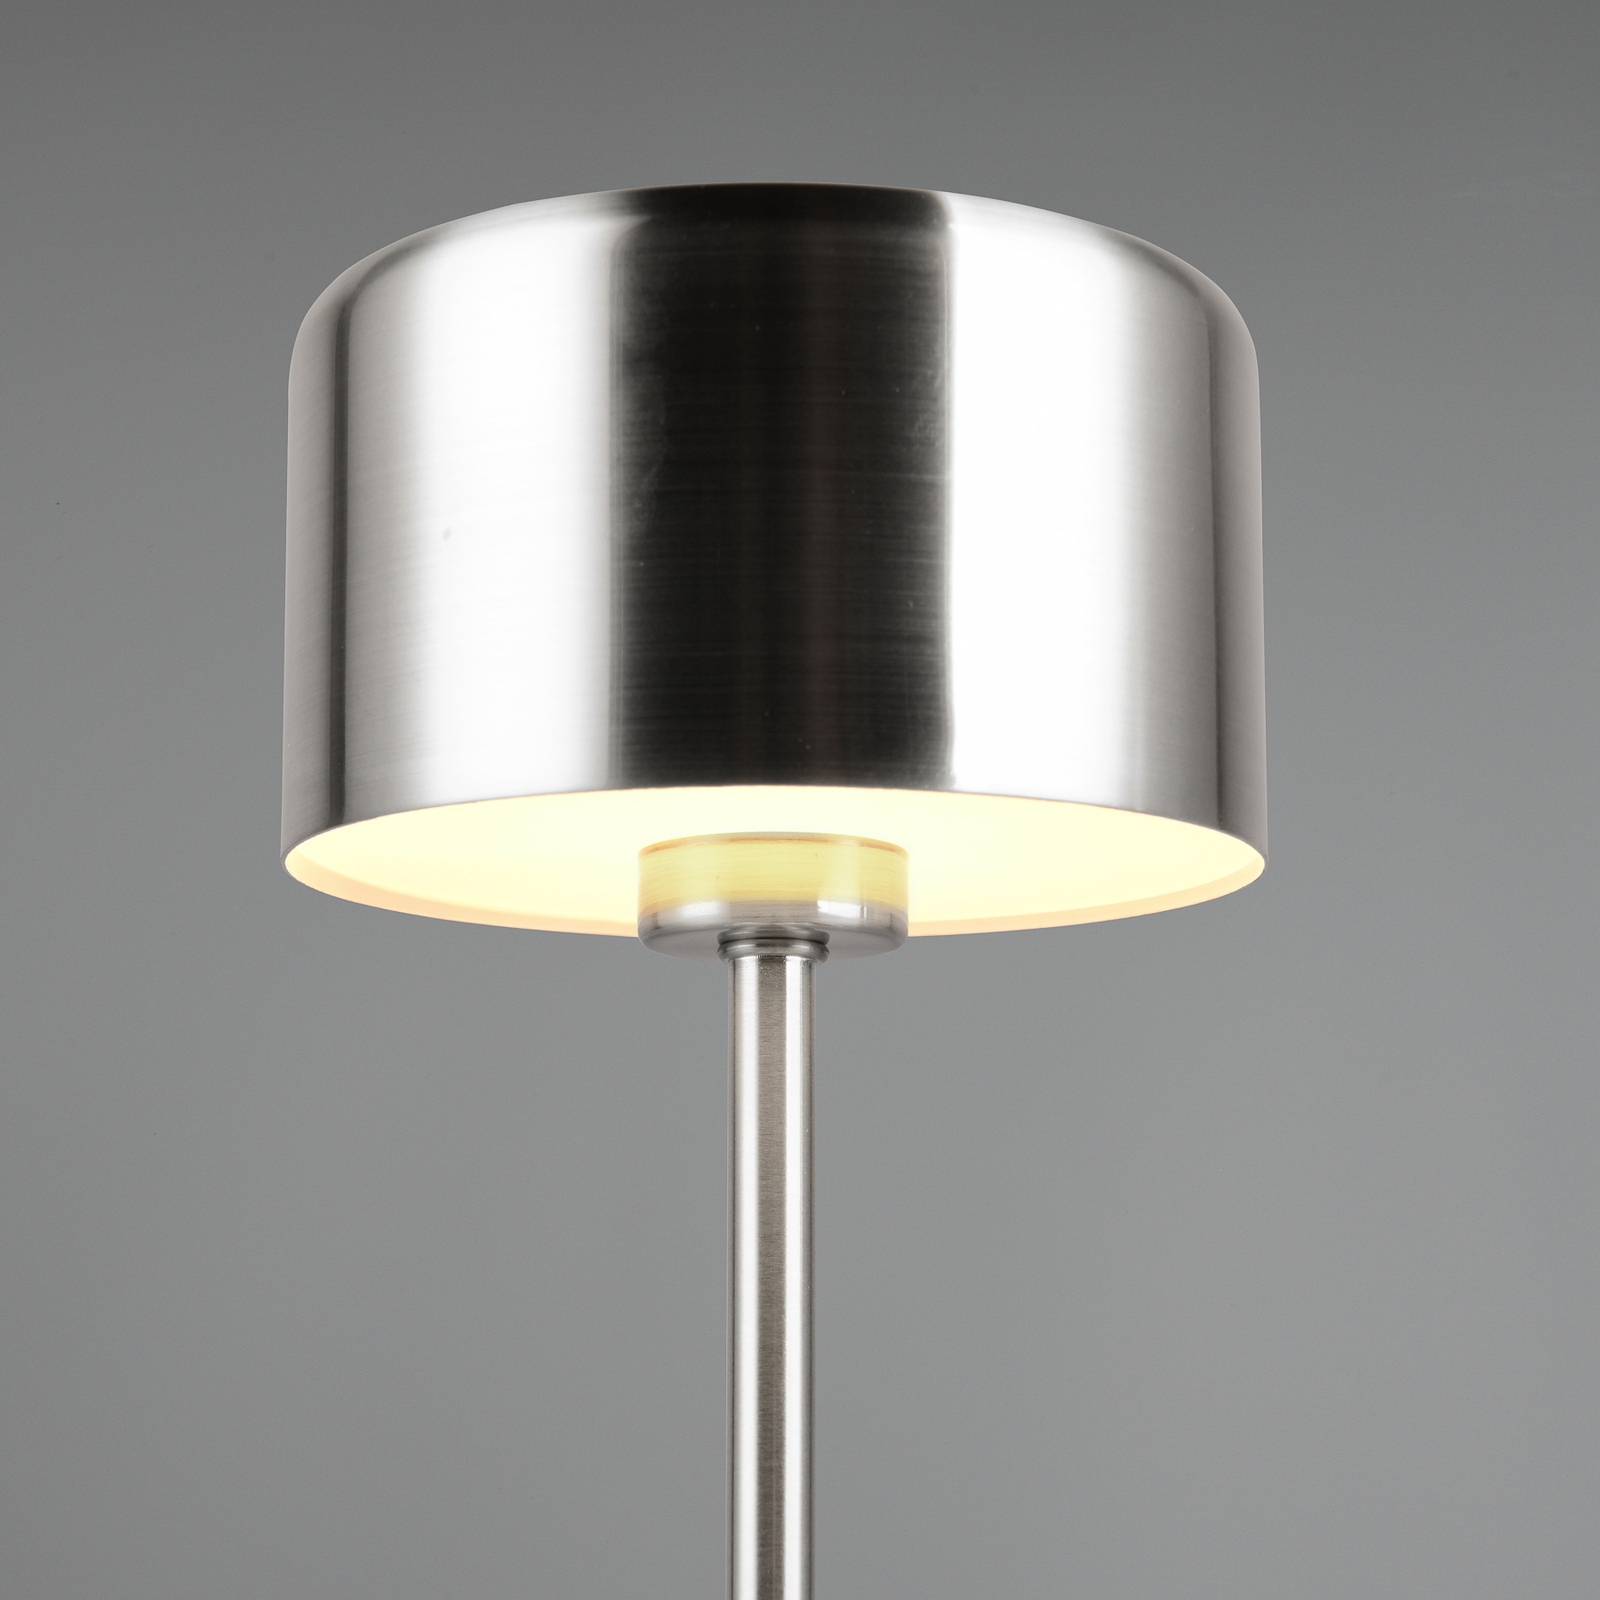 Jeff LED įkraunama stalinė lempa, nikelio spalvos, 30 cm aukščio, metalinė